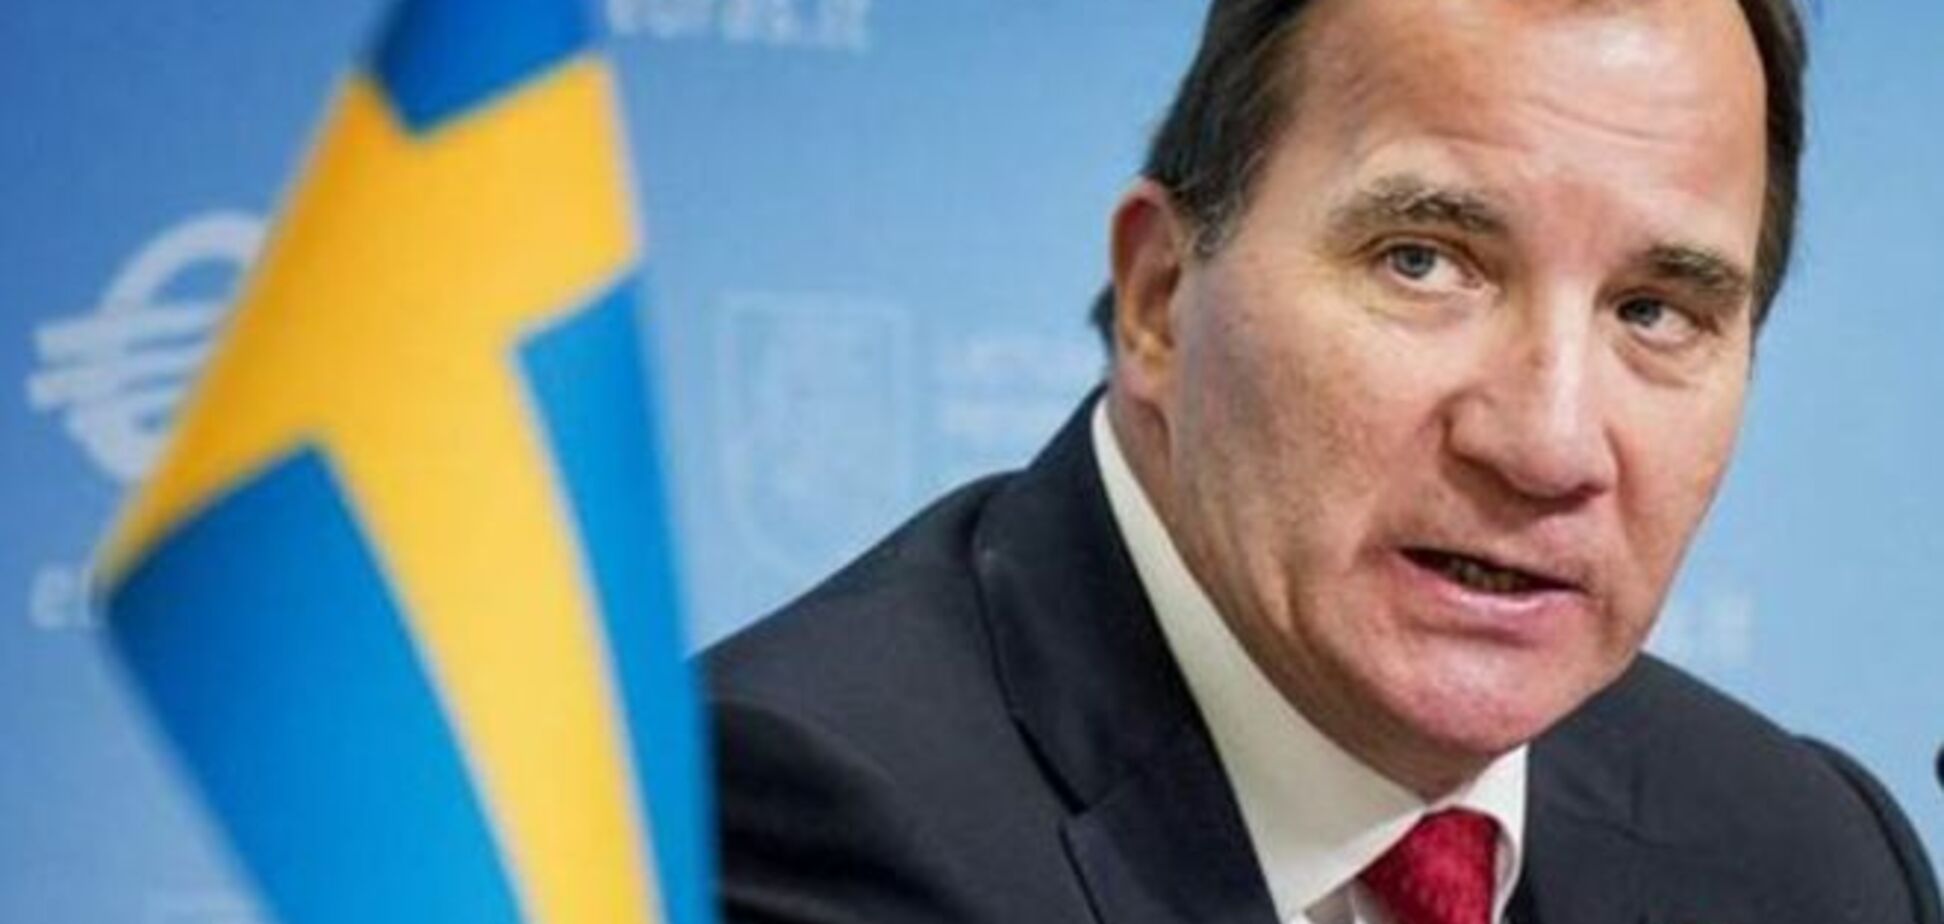 Швеция поддерживает ужесточение санкций против России - Левен